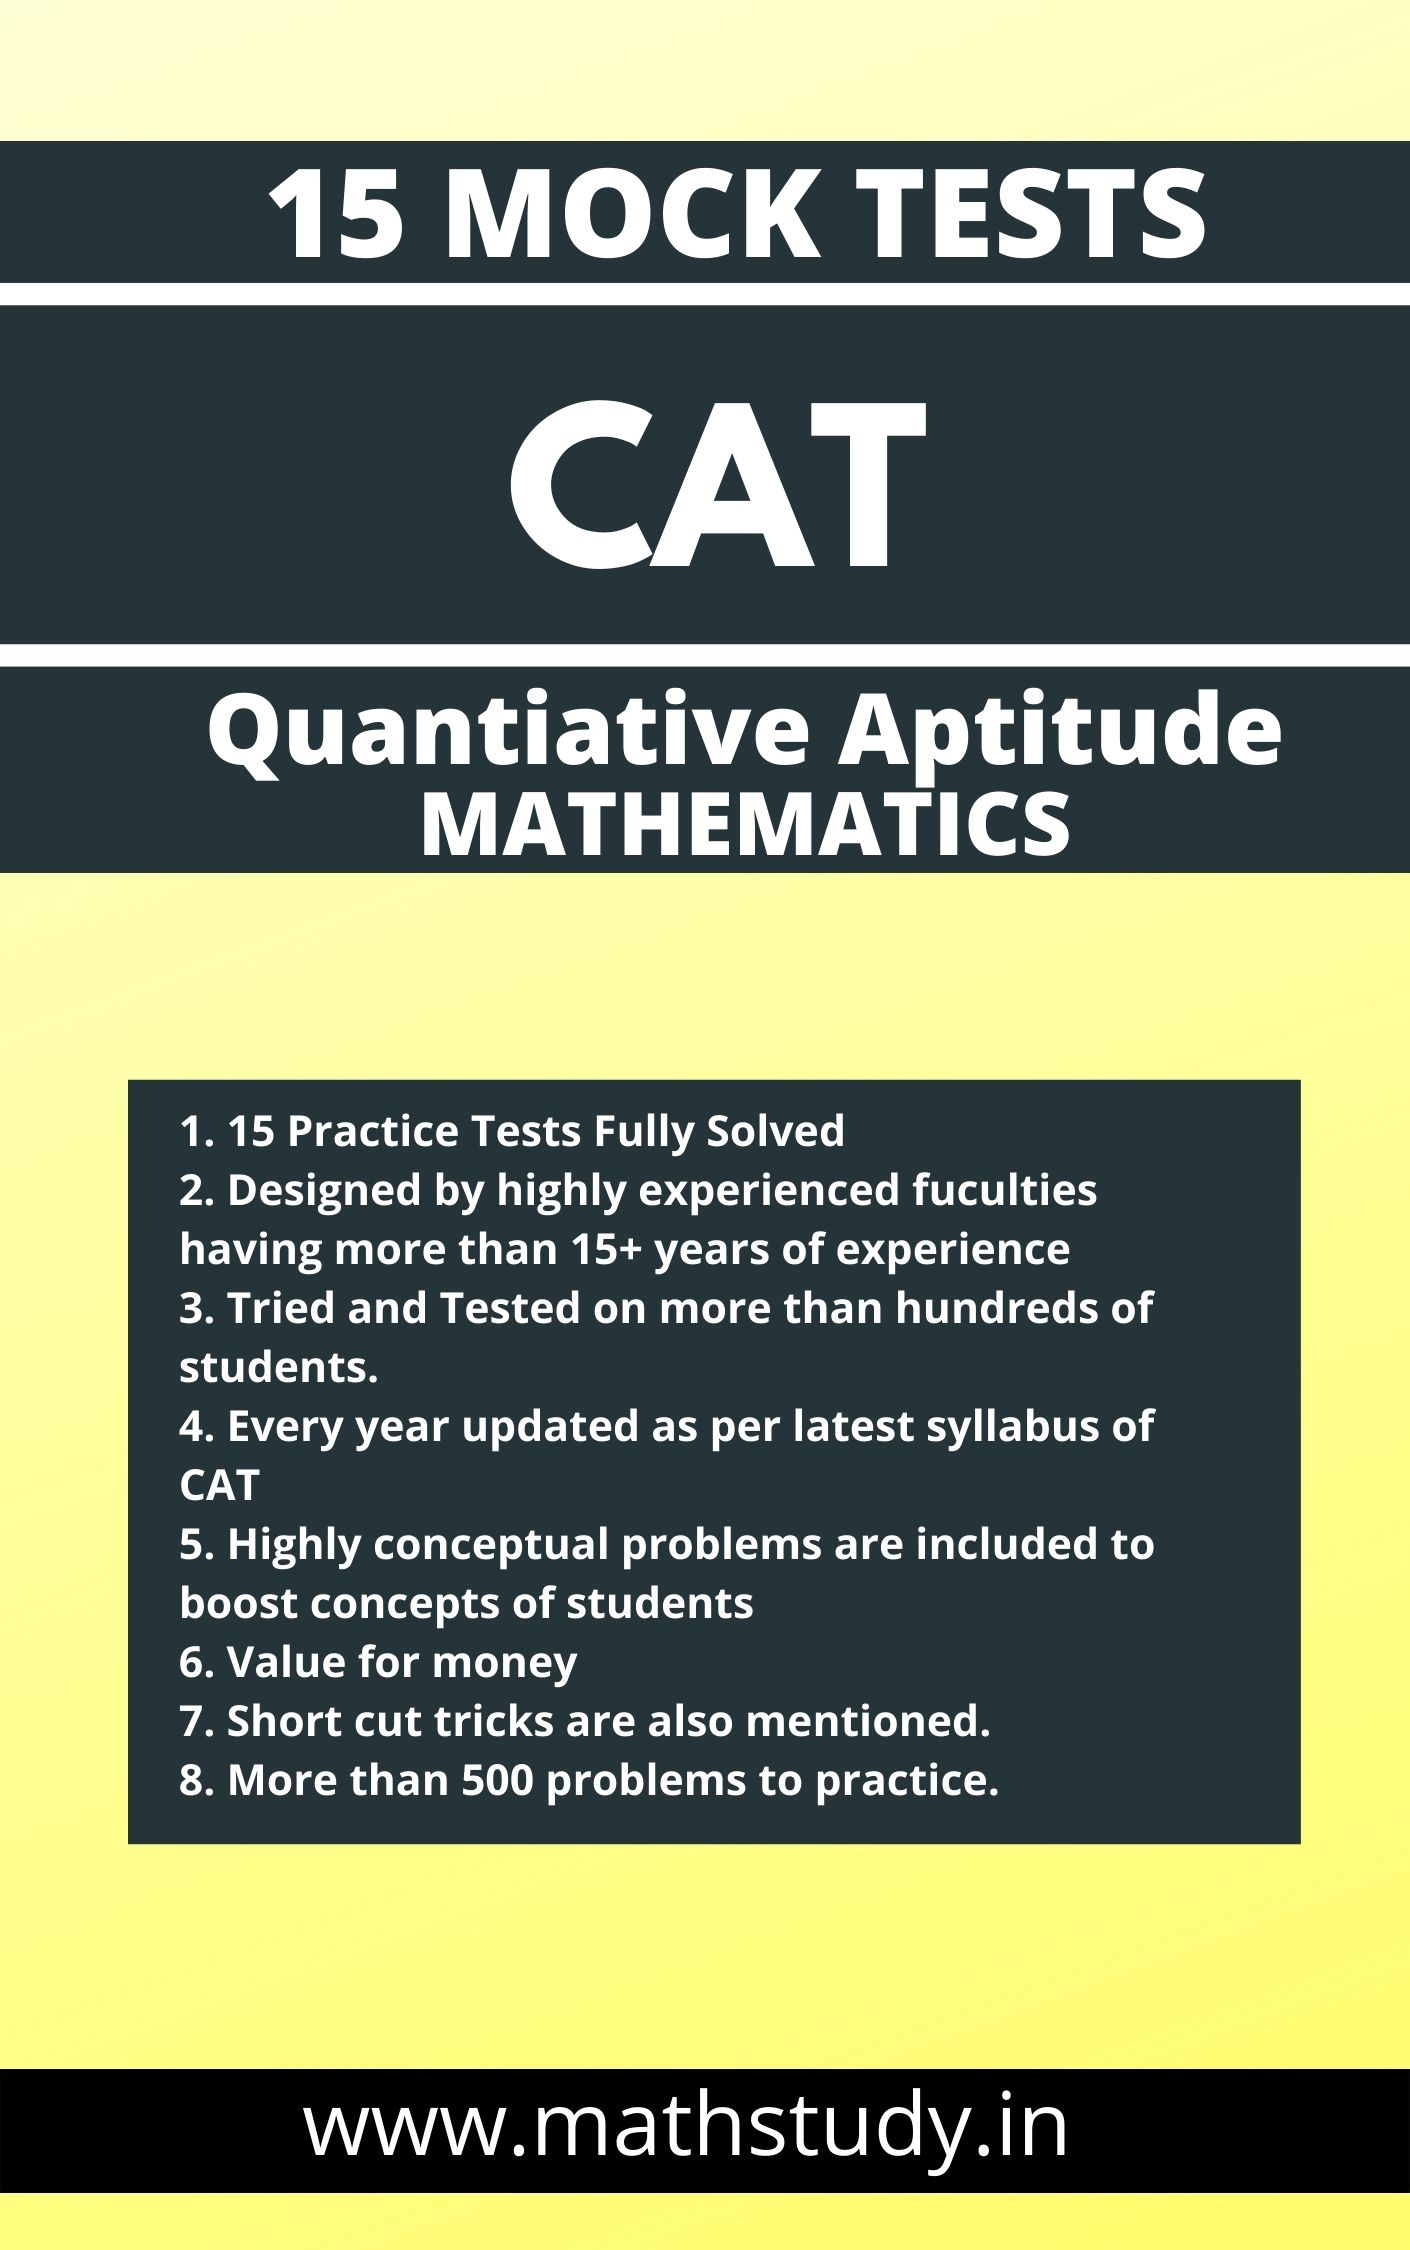 Quantitative Aptitude questions for CAT